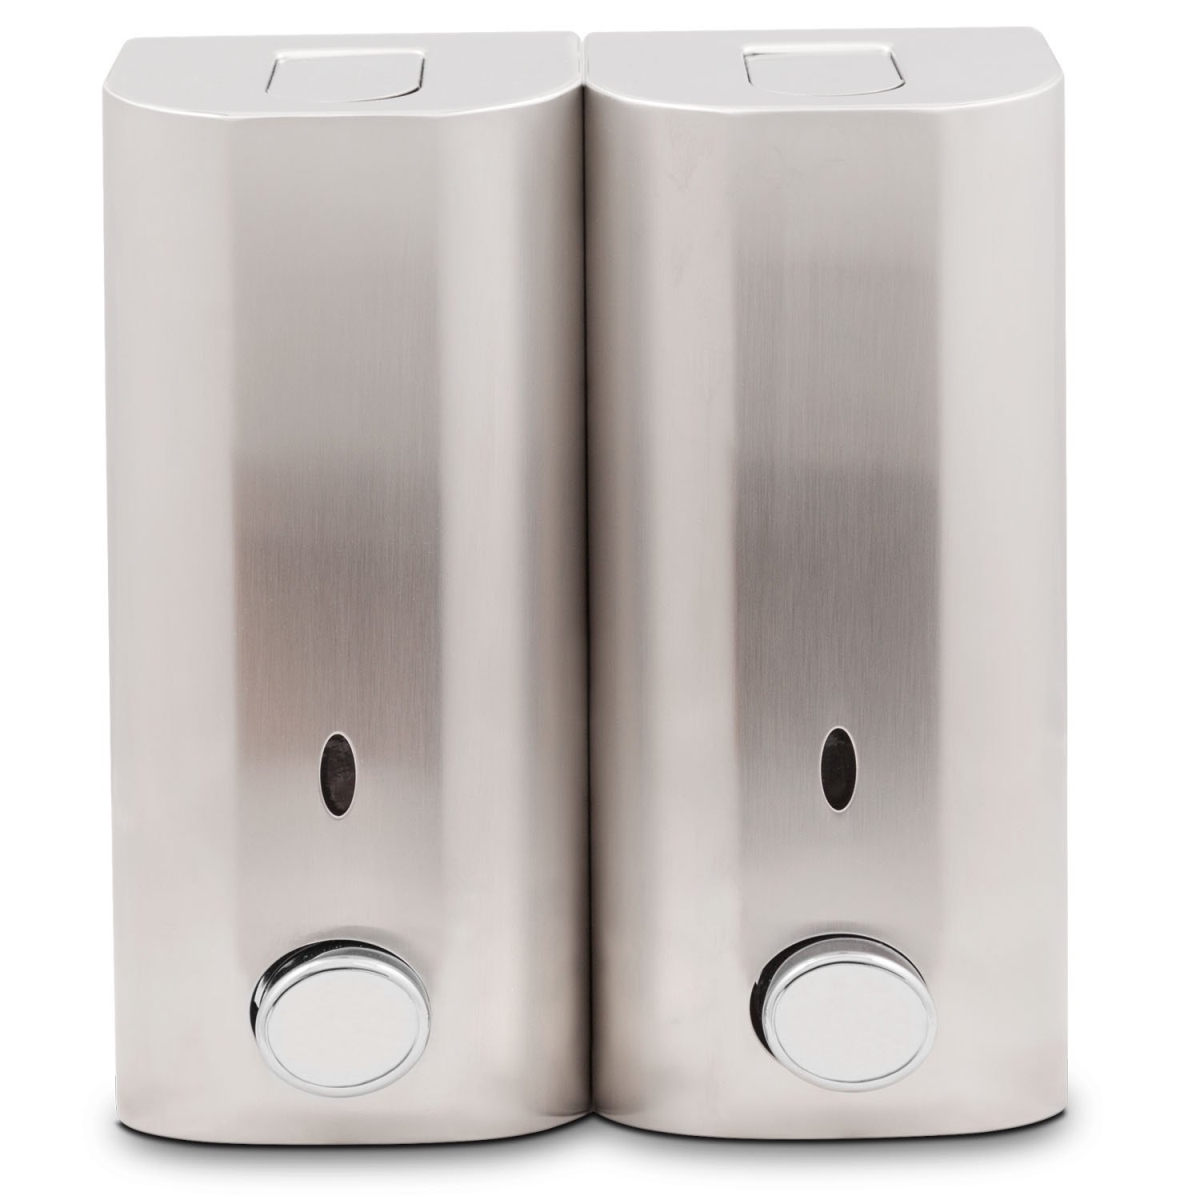 Dsp02h Double Shower Dispenser, Luxury Satin Nickel